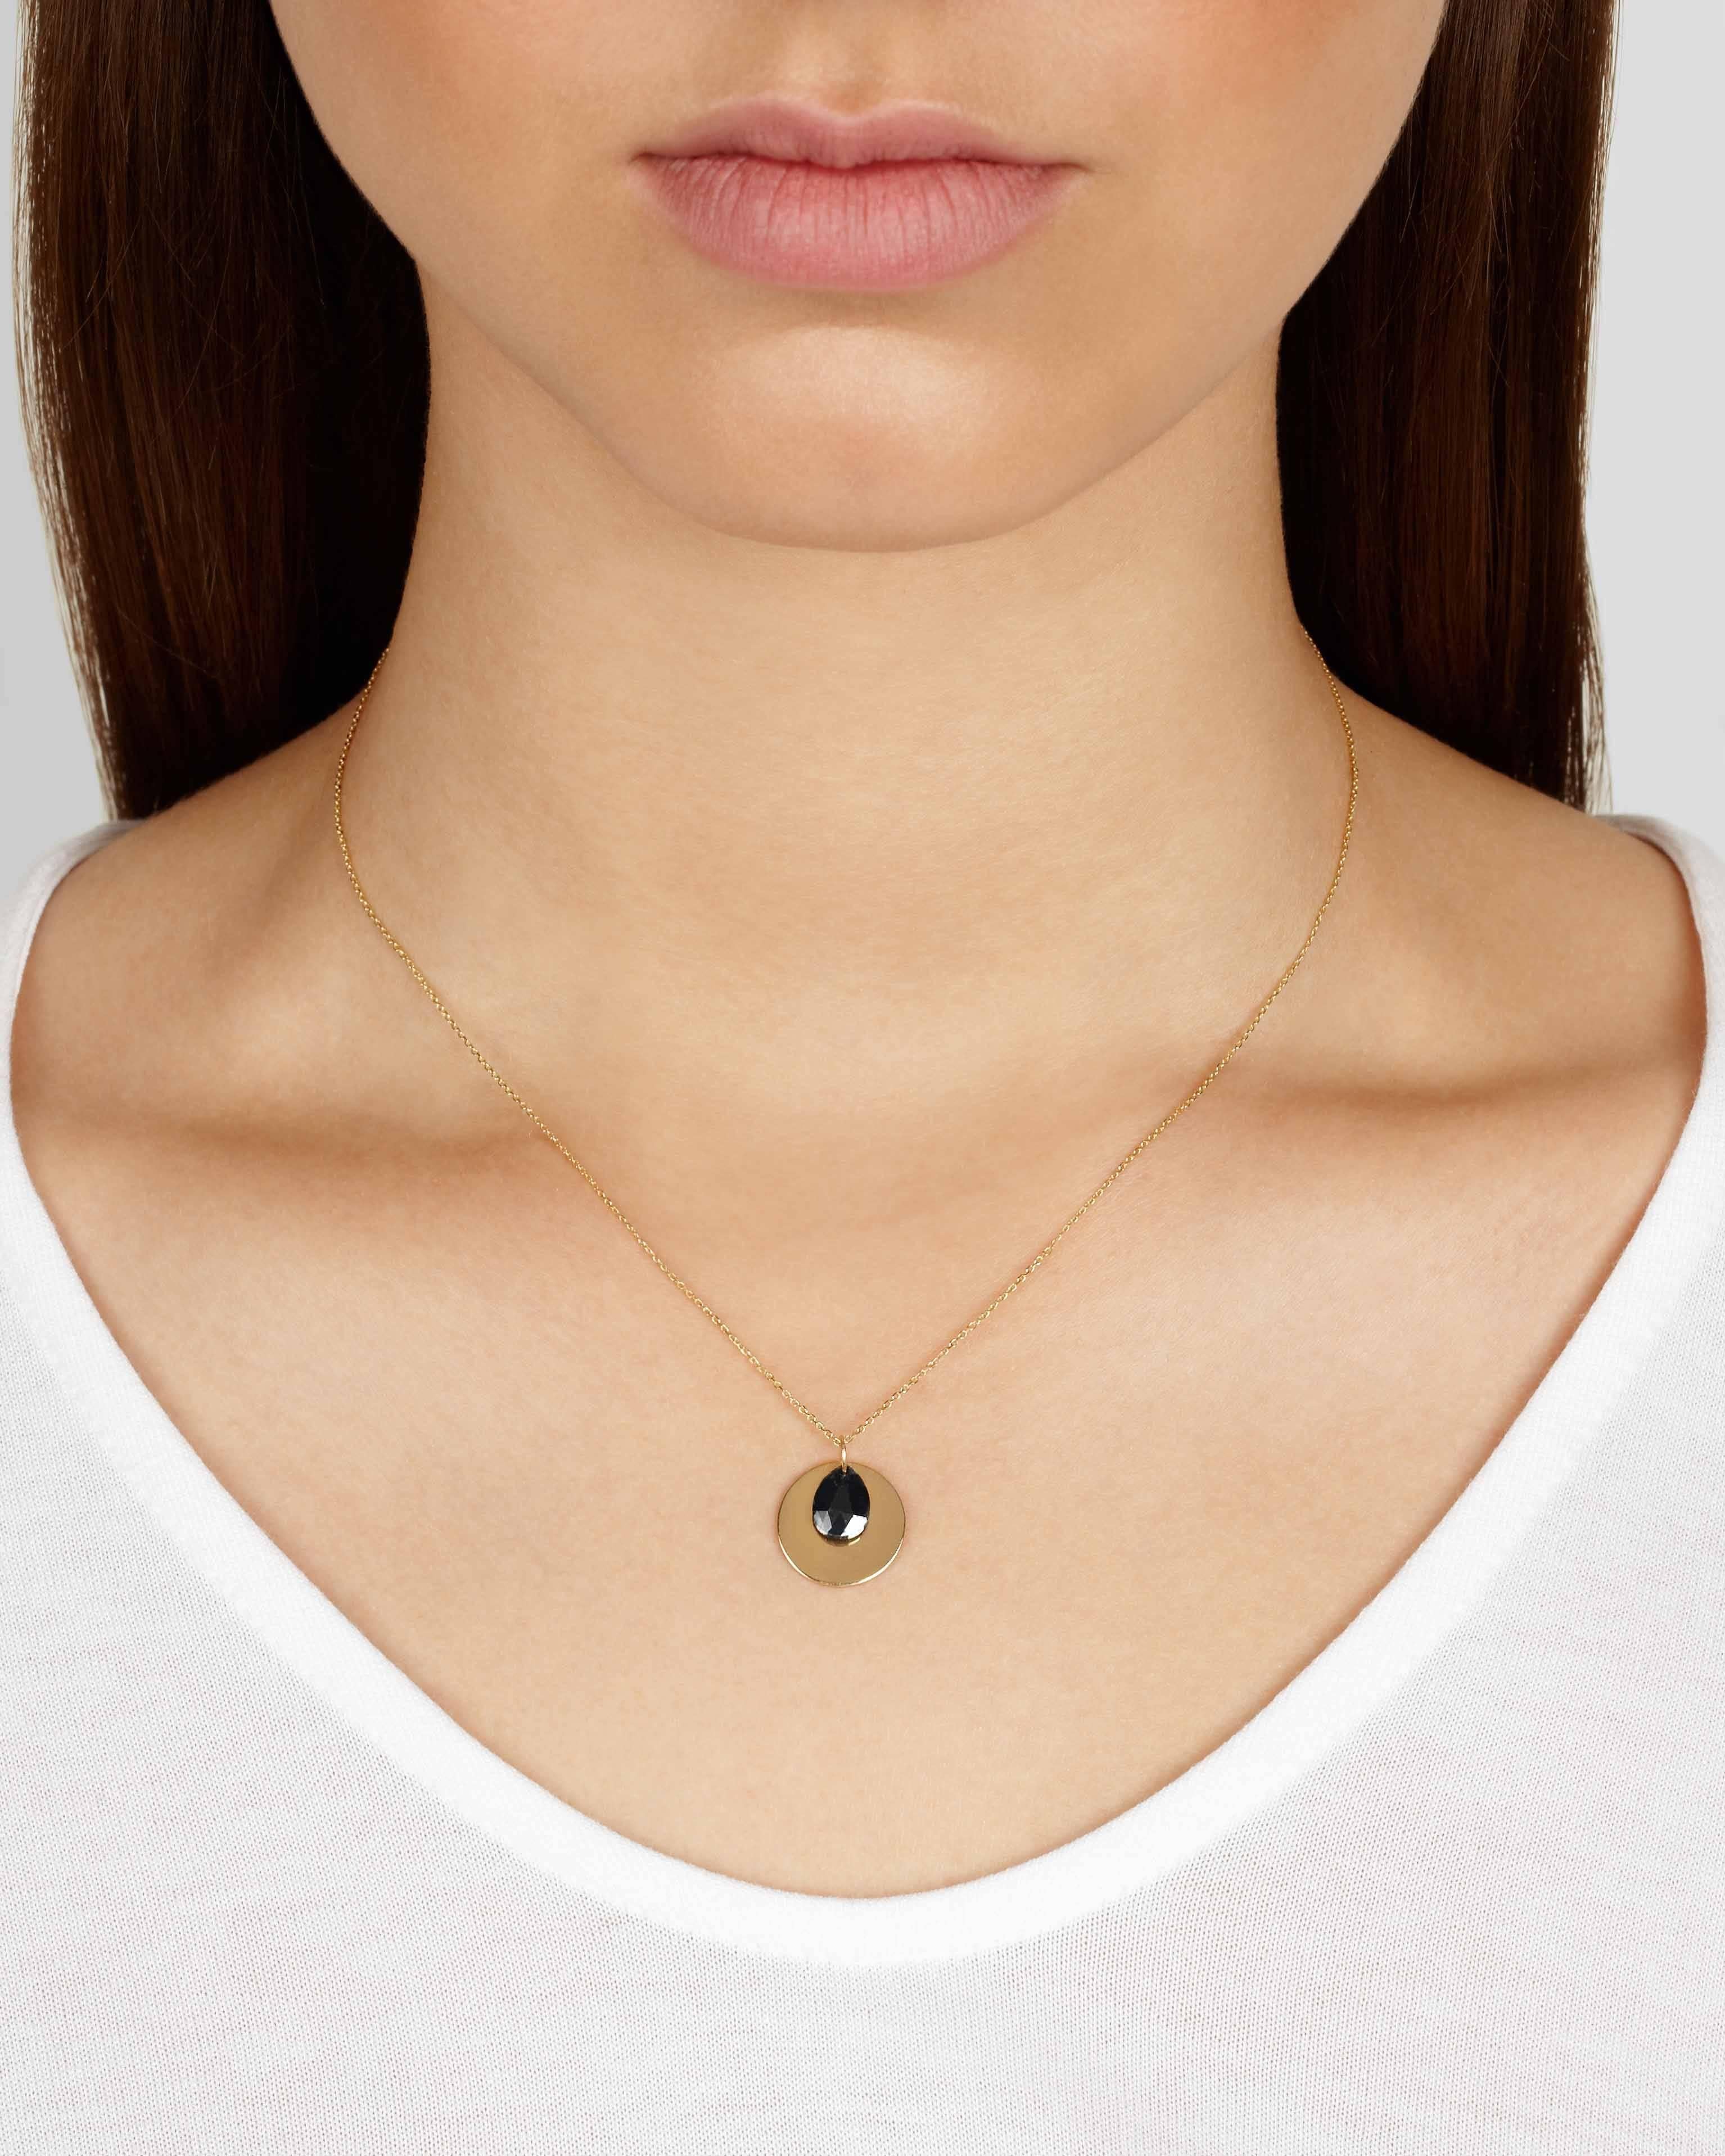 Diese zarte Halskette besteht aus einer massiven 9-Karat-Goldscheibe, die mit einem rustikalen schwarzen Diamanten im Rosenschliff in Birnenform akzentuiert ist. Der Diamant und die Scheiben hängen unabhängig von einer feinen 18-karätigen